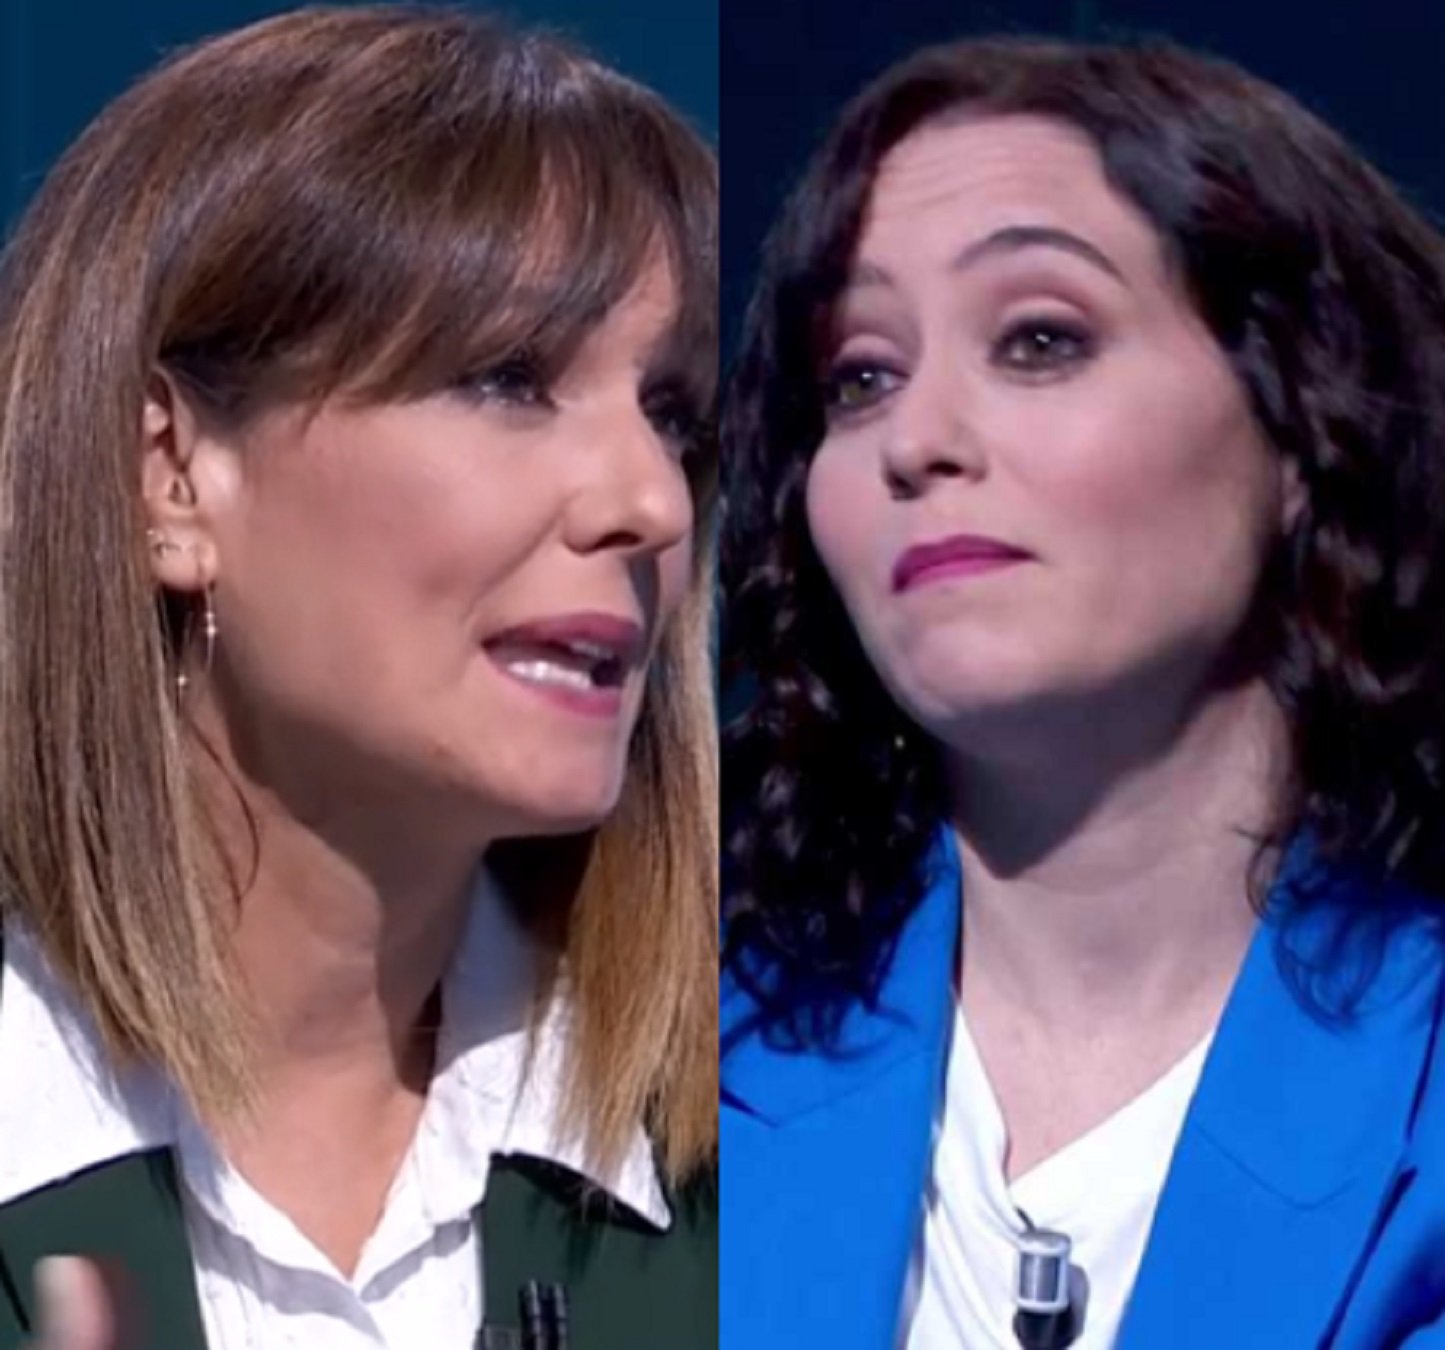 Mastegot per triplicat de Mónica López a Ayuso en directe: reacció patètica